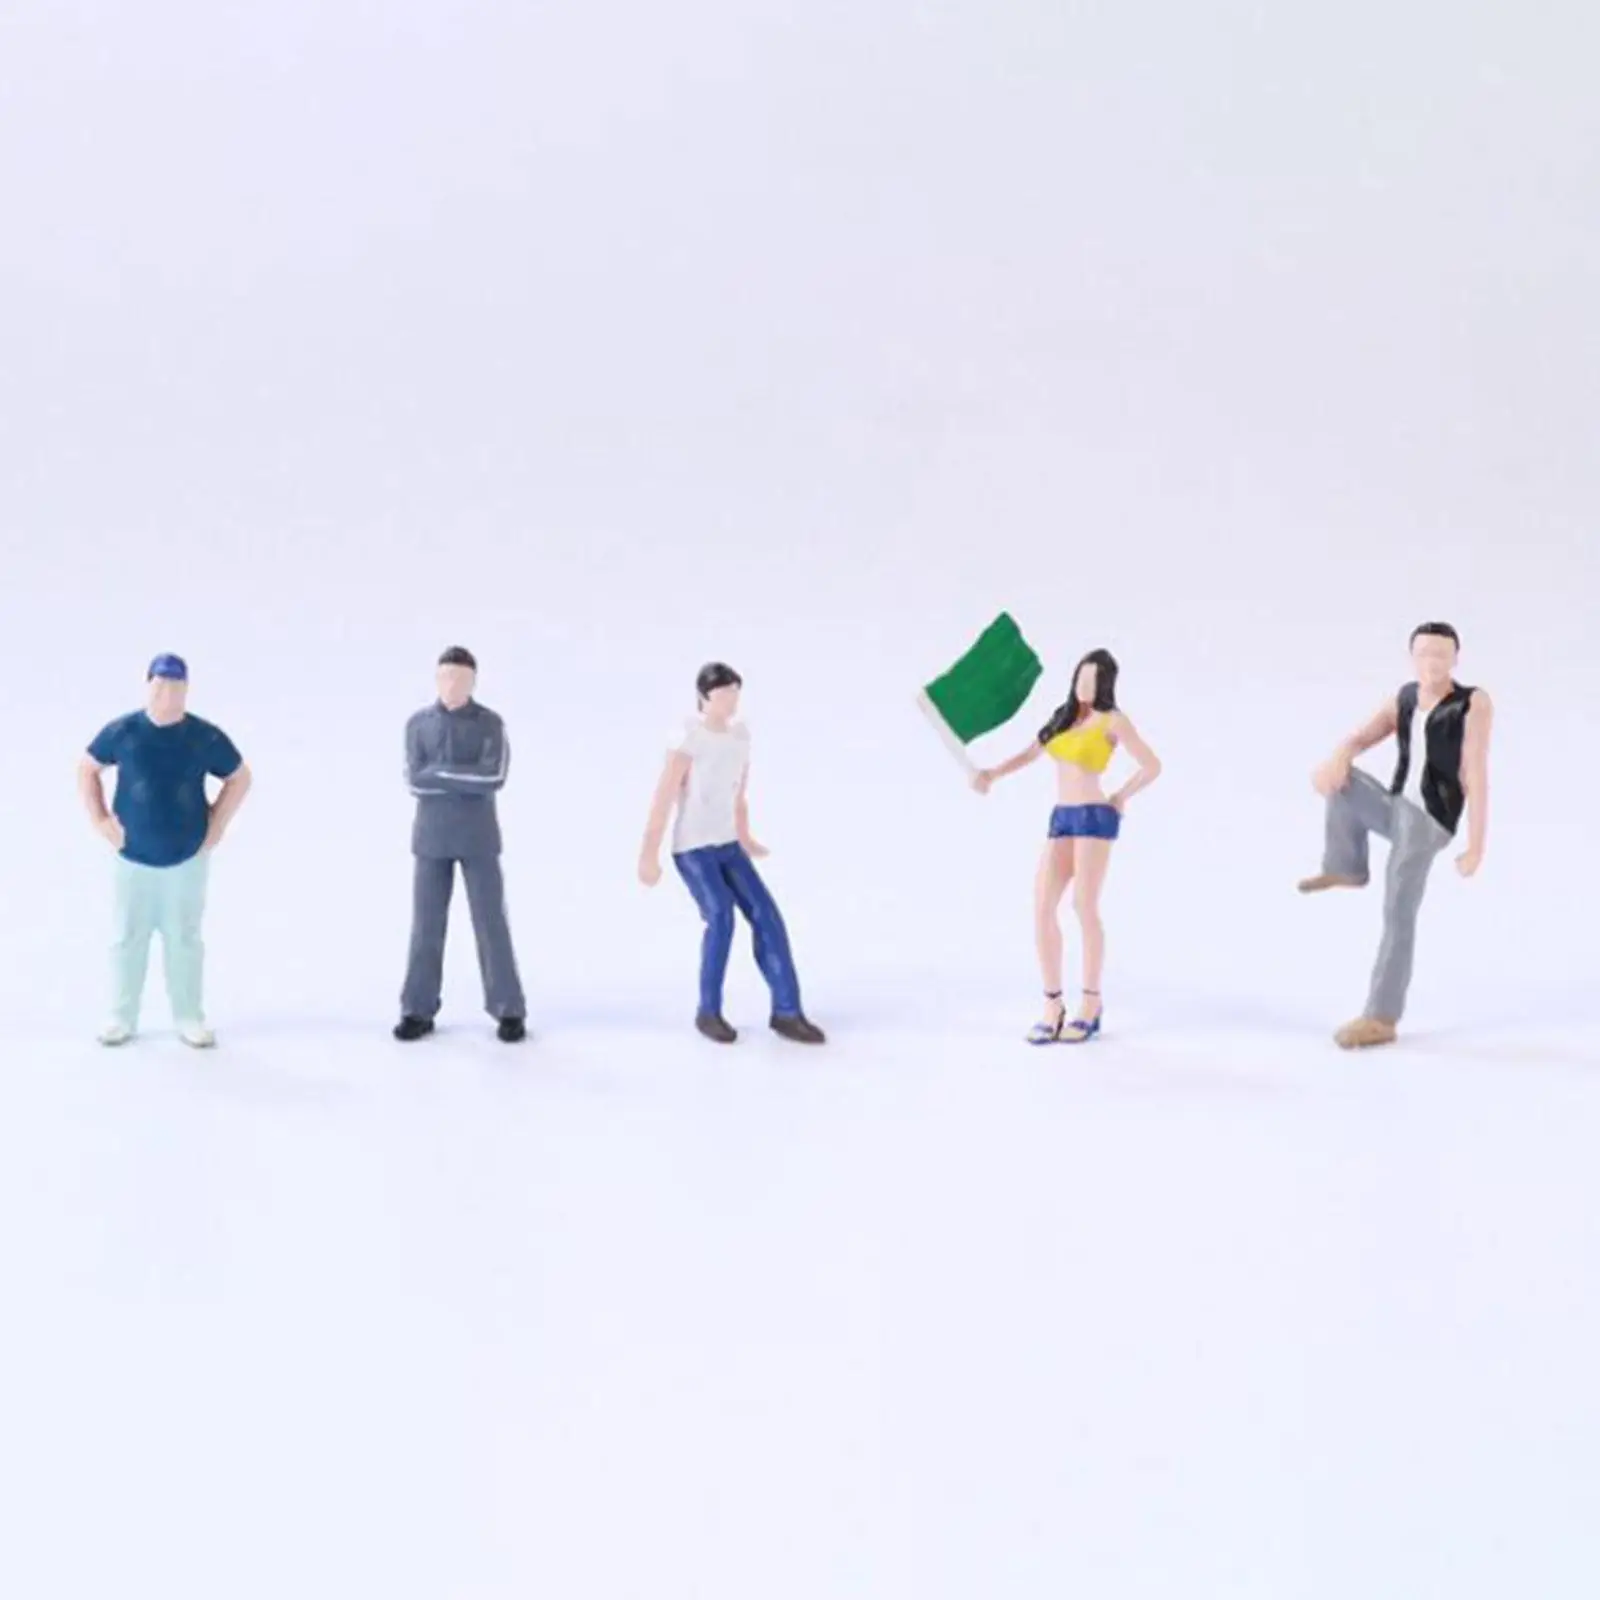 5 Pieces 1/64 Scale People Figure Set for Miniature Scene Micro Landscape